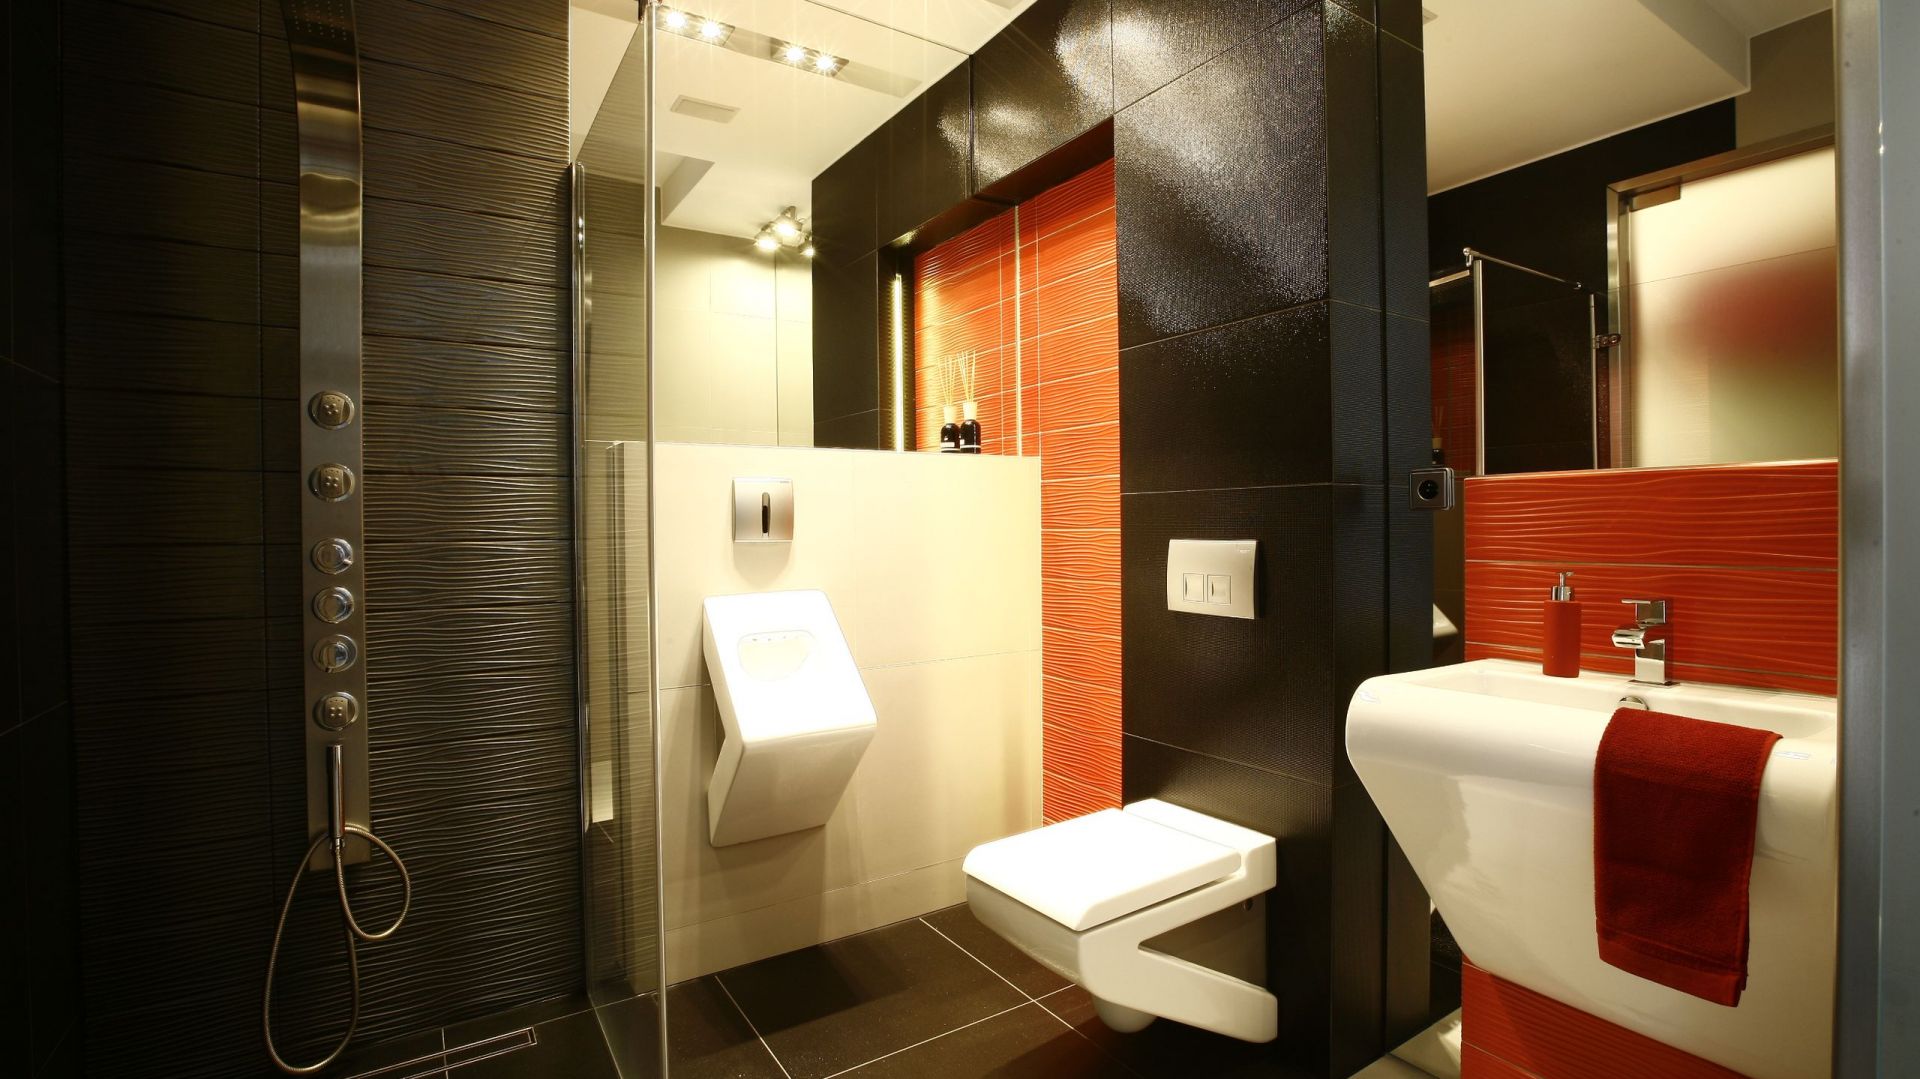 Domowa łazienka z pisuarem: zobacz pomysły architektów